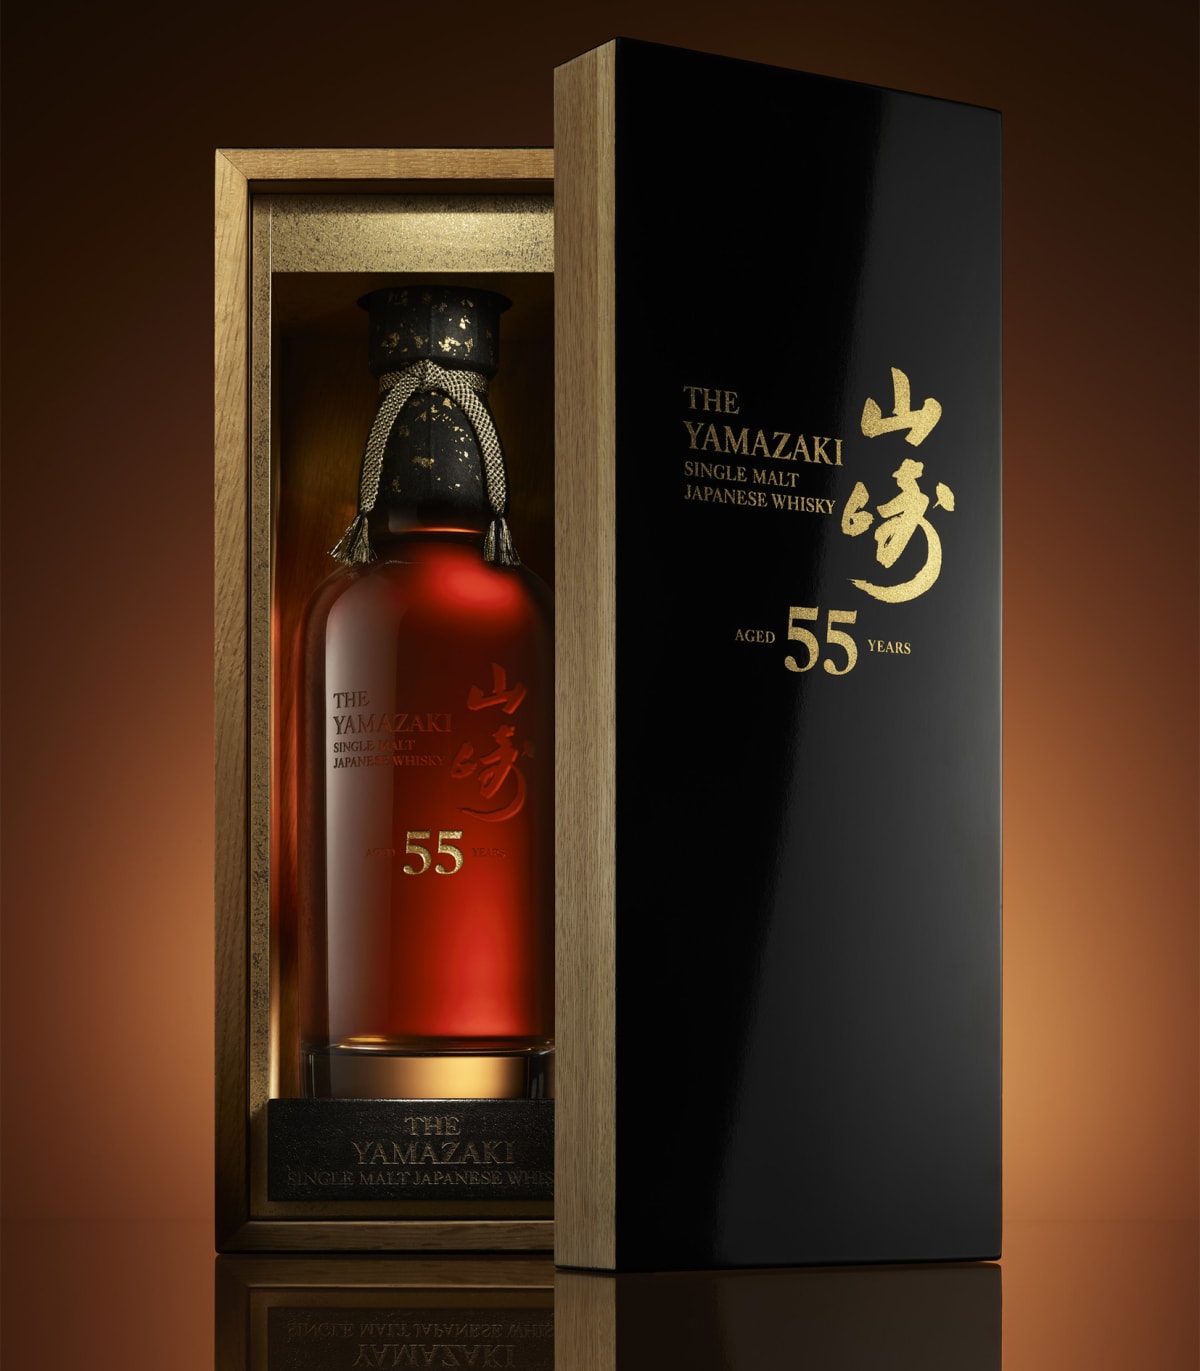 Velkou aktivitu v oblasti whisky vykazují v posledních letech asijští investoři. Sílu japonské whisky ilustruje například Suntory Yamazaki 55 Year Limited Edition, u níž se jedna z láhví vydražila za téměř 900 000 amerických dolarů.